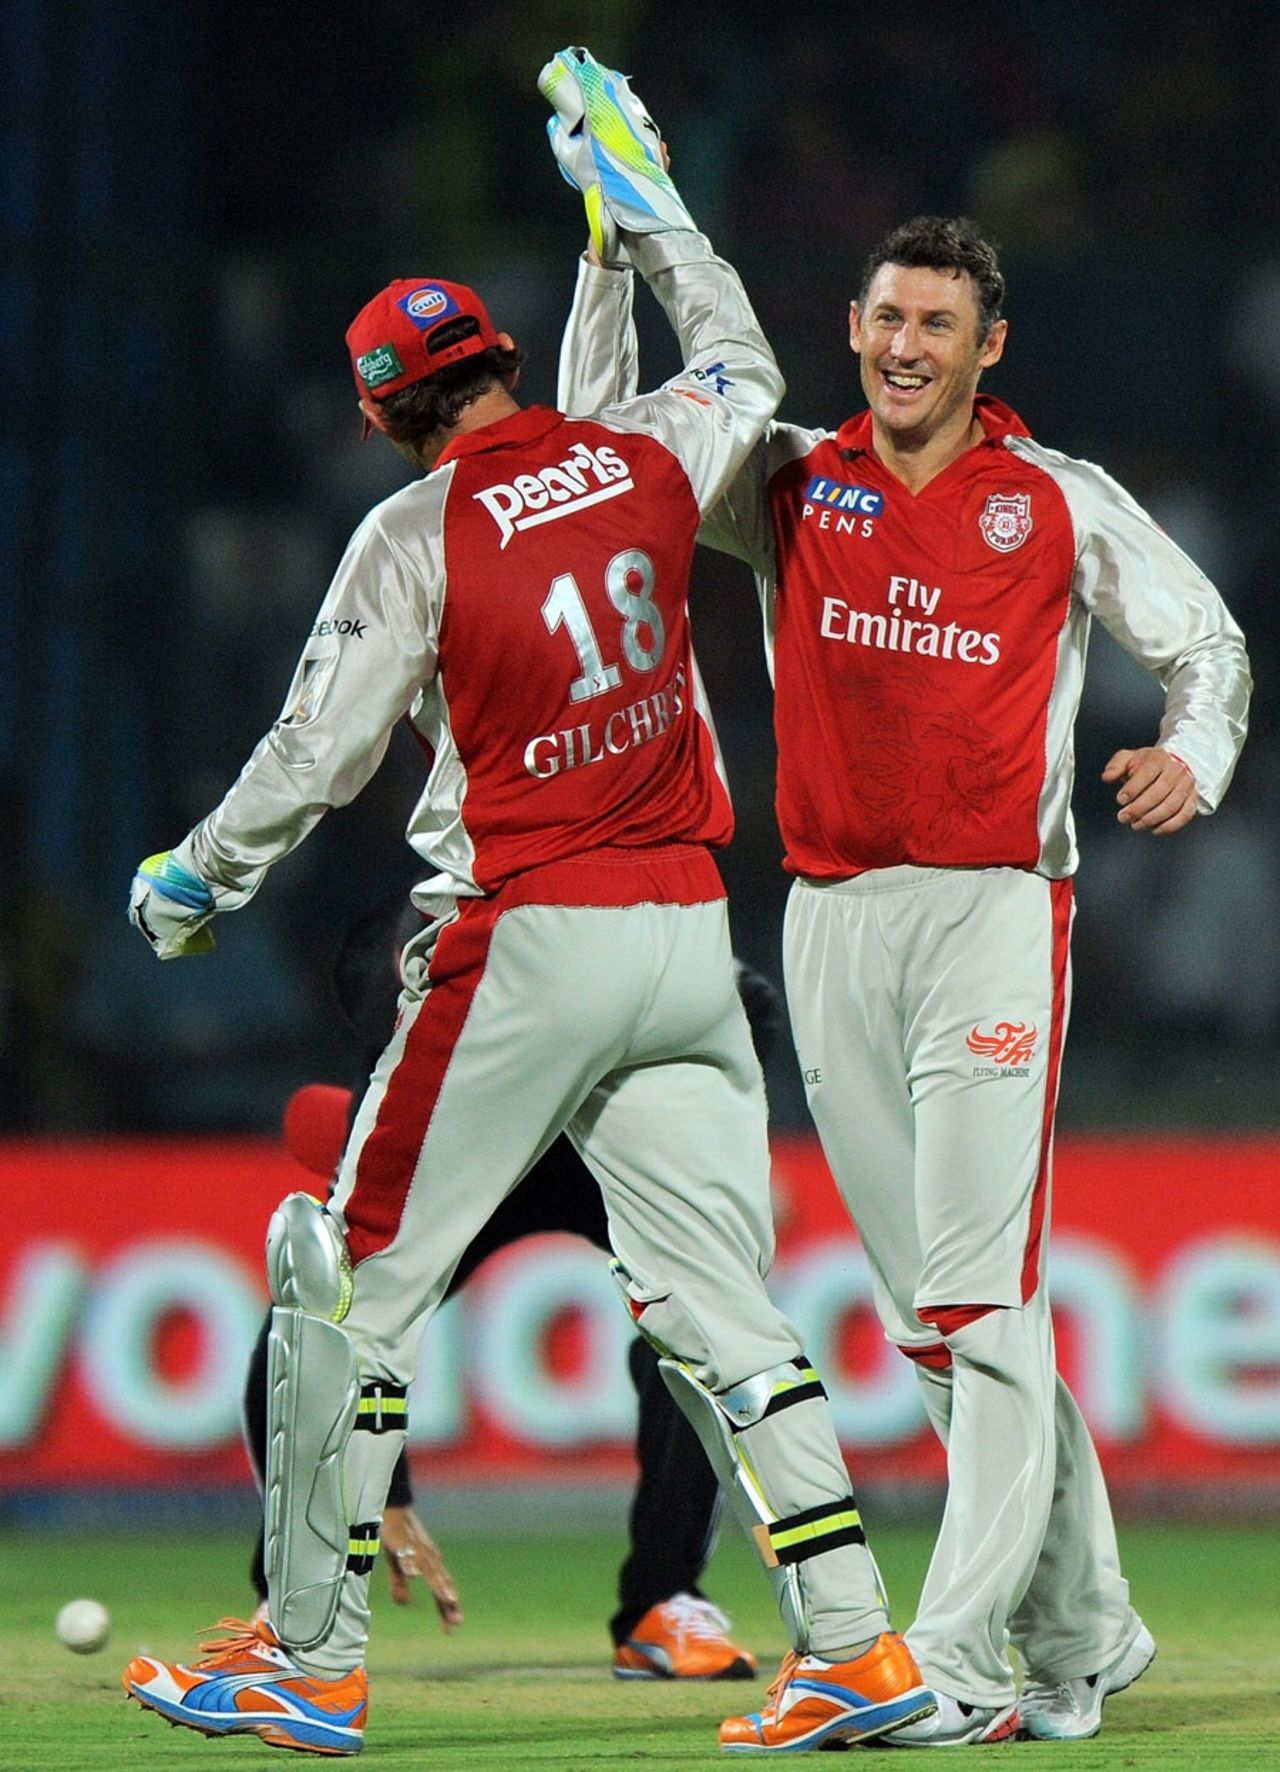 David Hussey strikes after conceding three successive sixes, Delhi Daredevils v Kings XI Punjab, IPL 2011, Delhi, April 23, 2011